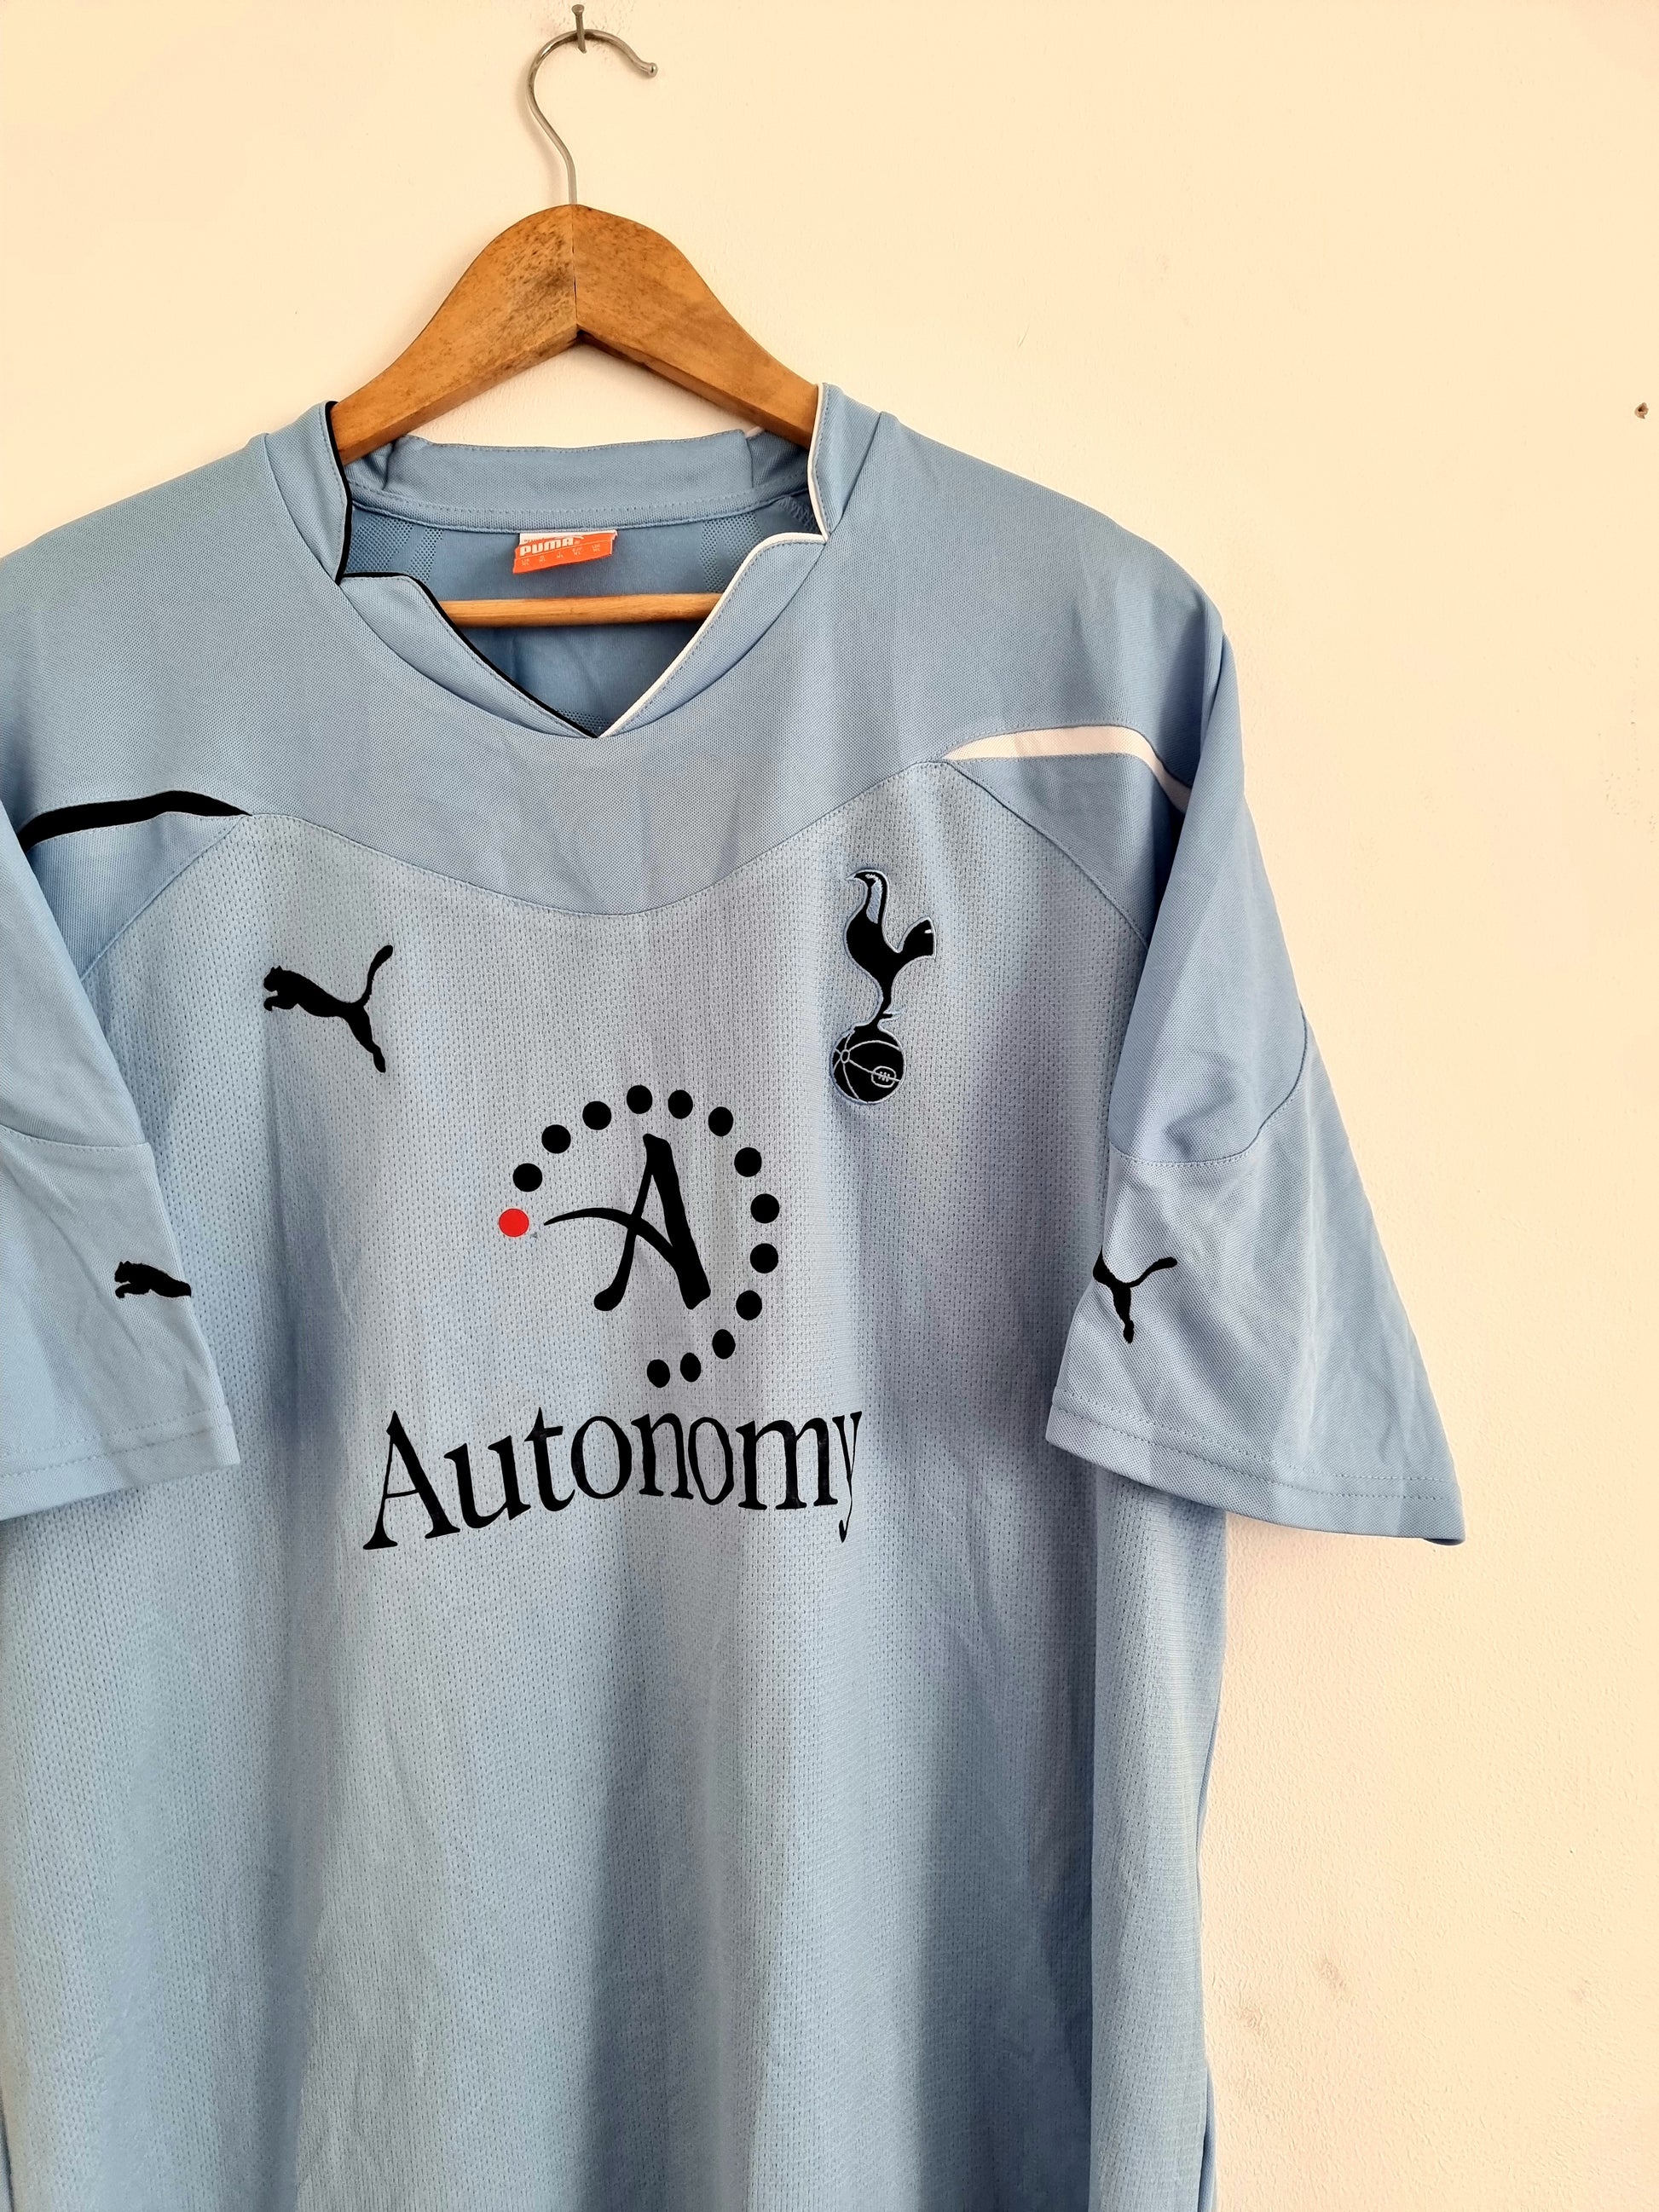 Tottenham Hotspur 2011-12 Away Shirt (Excellent) XL